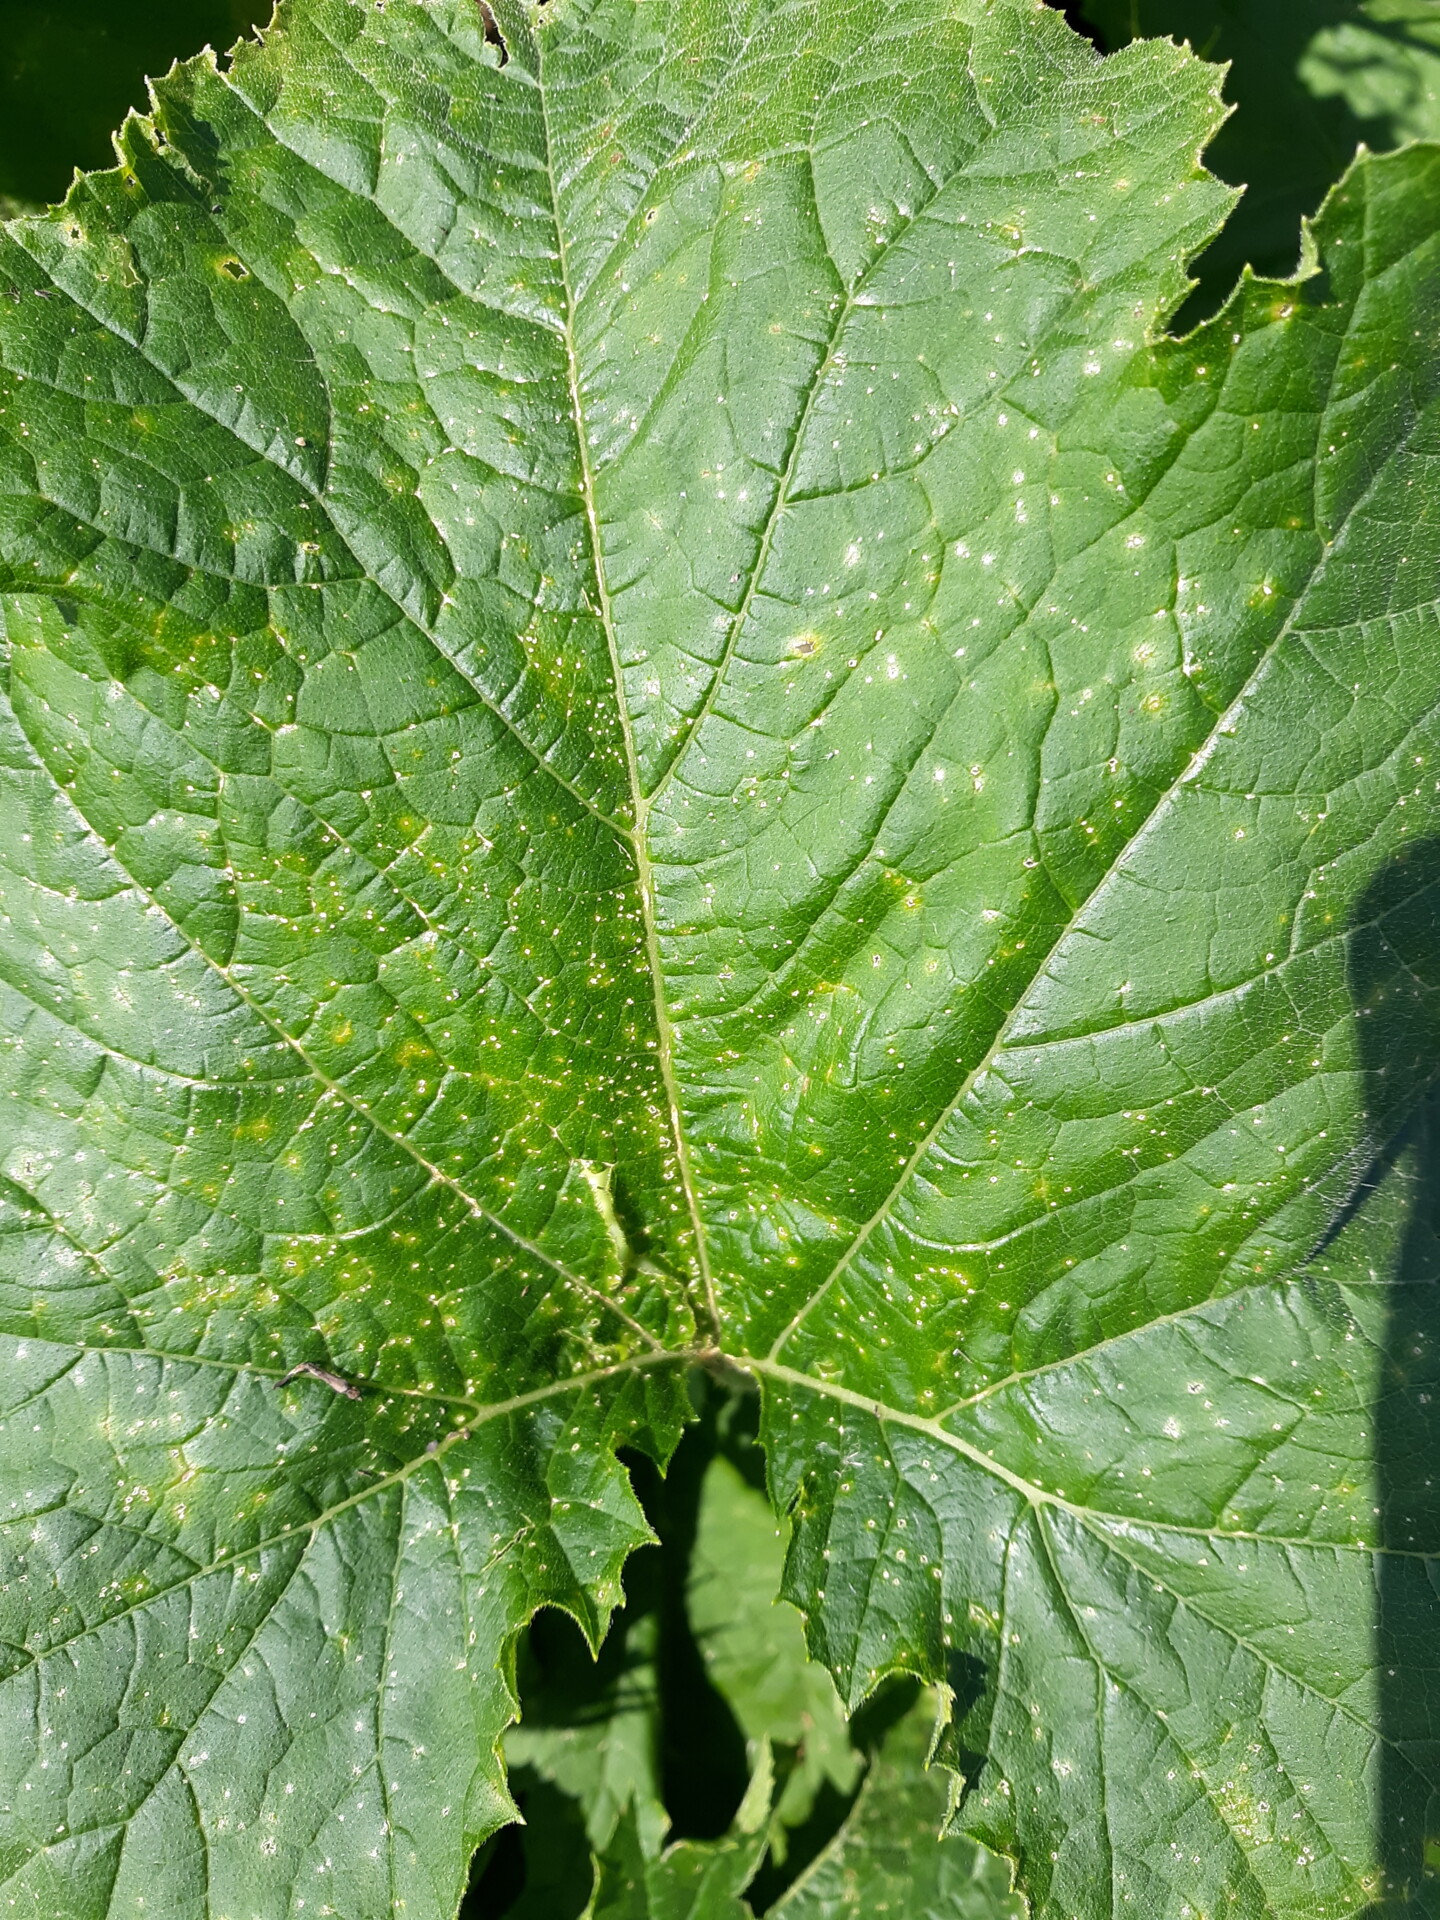 Plectosporium blight of pumpkin on leaf.